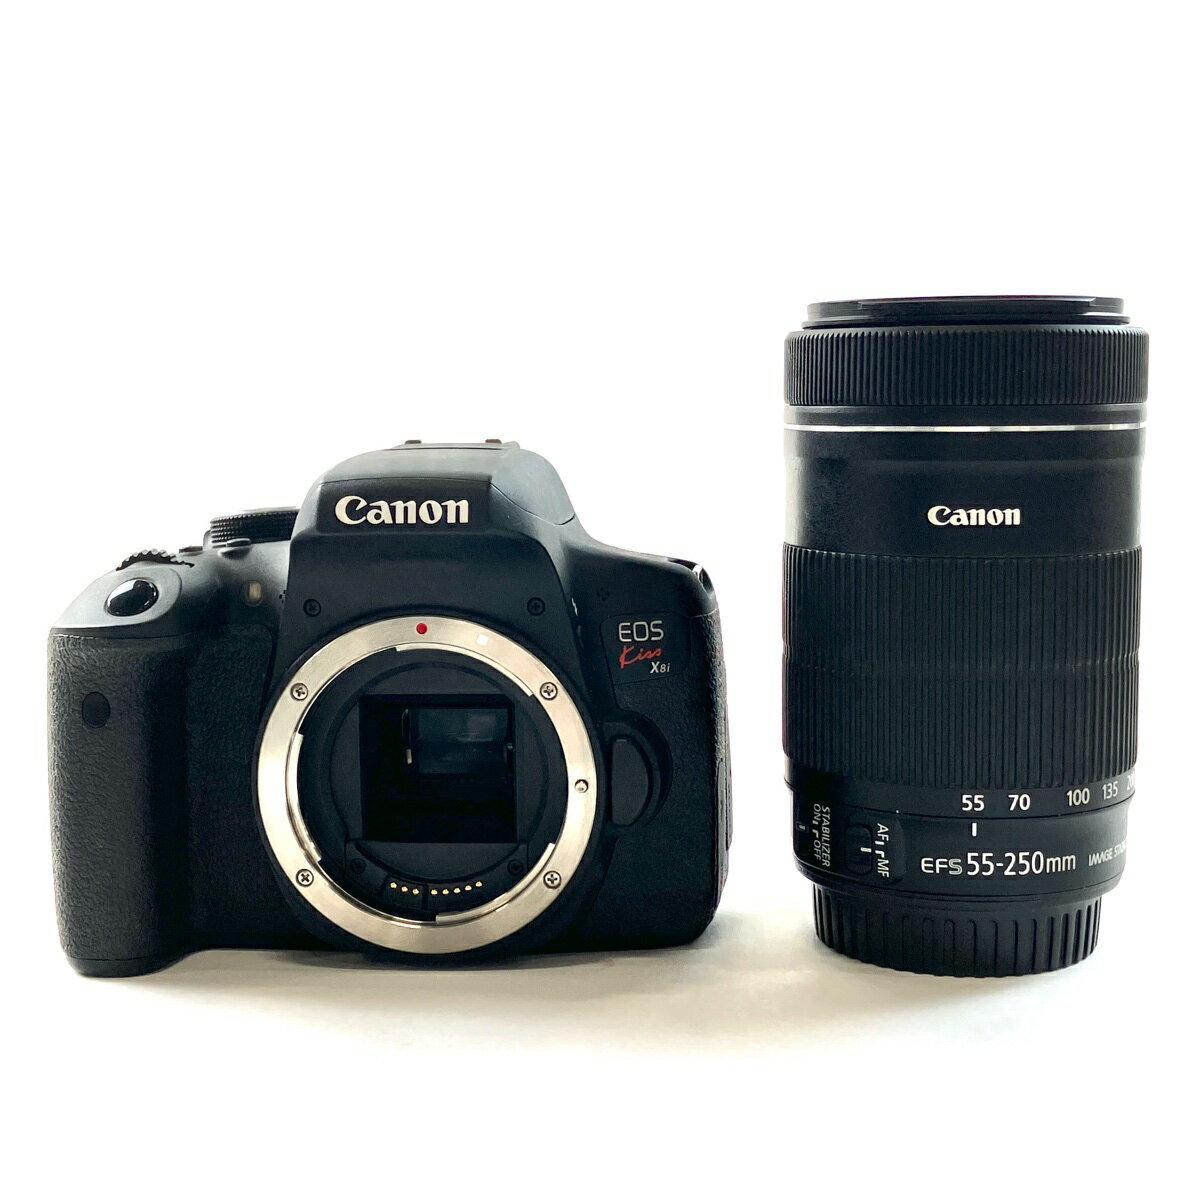 キヤノン Canon EOS Kiss X8i + EF-S 55-250mm F4-5.6 IS STM デジタル 一眼レフカメラ 【中古】